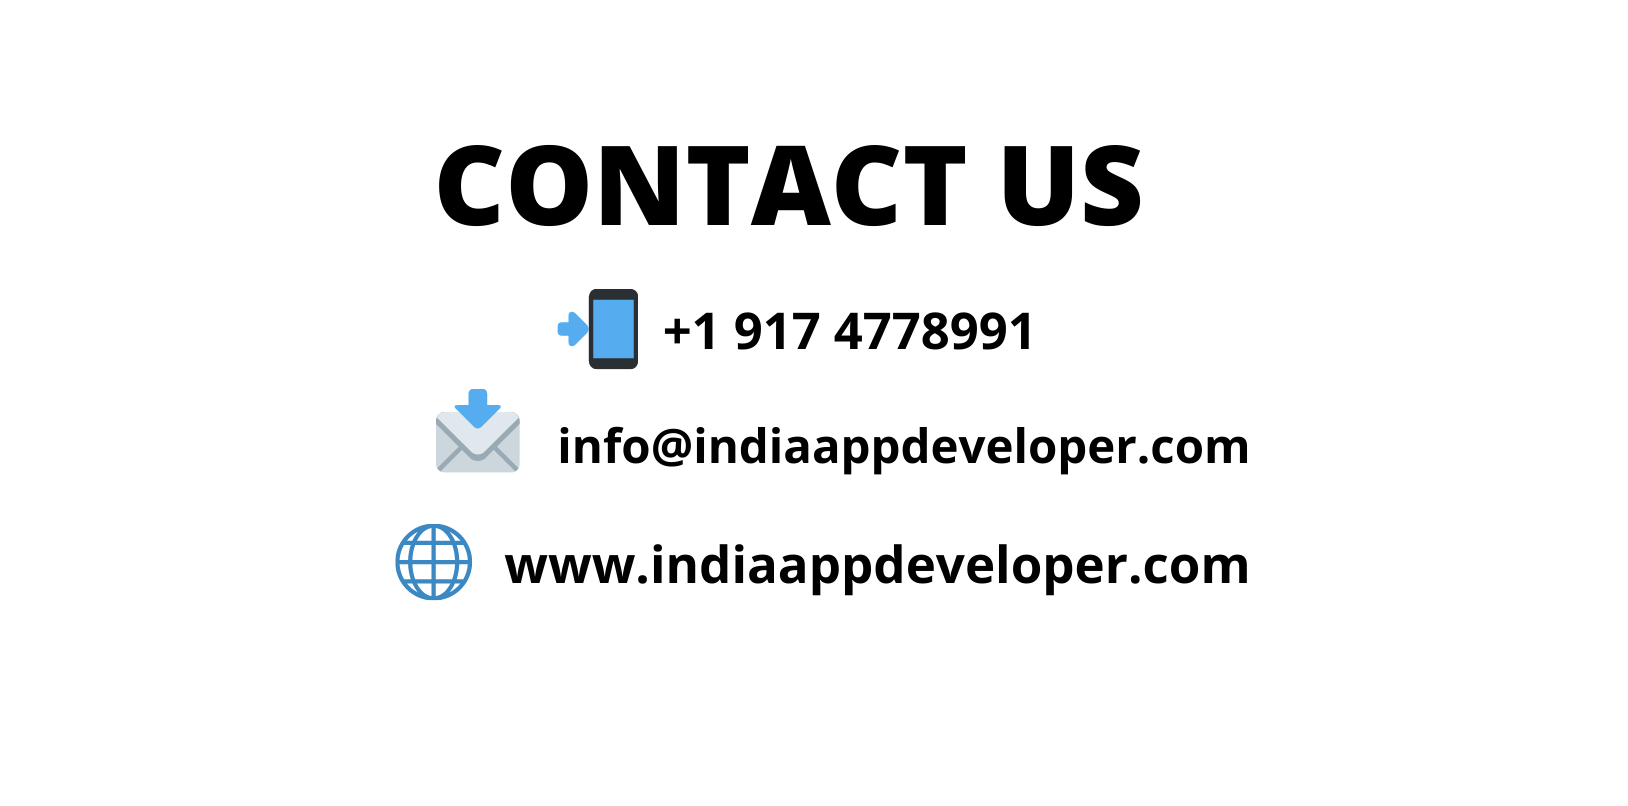 India-App-Developer-Contact-US